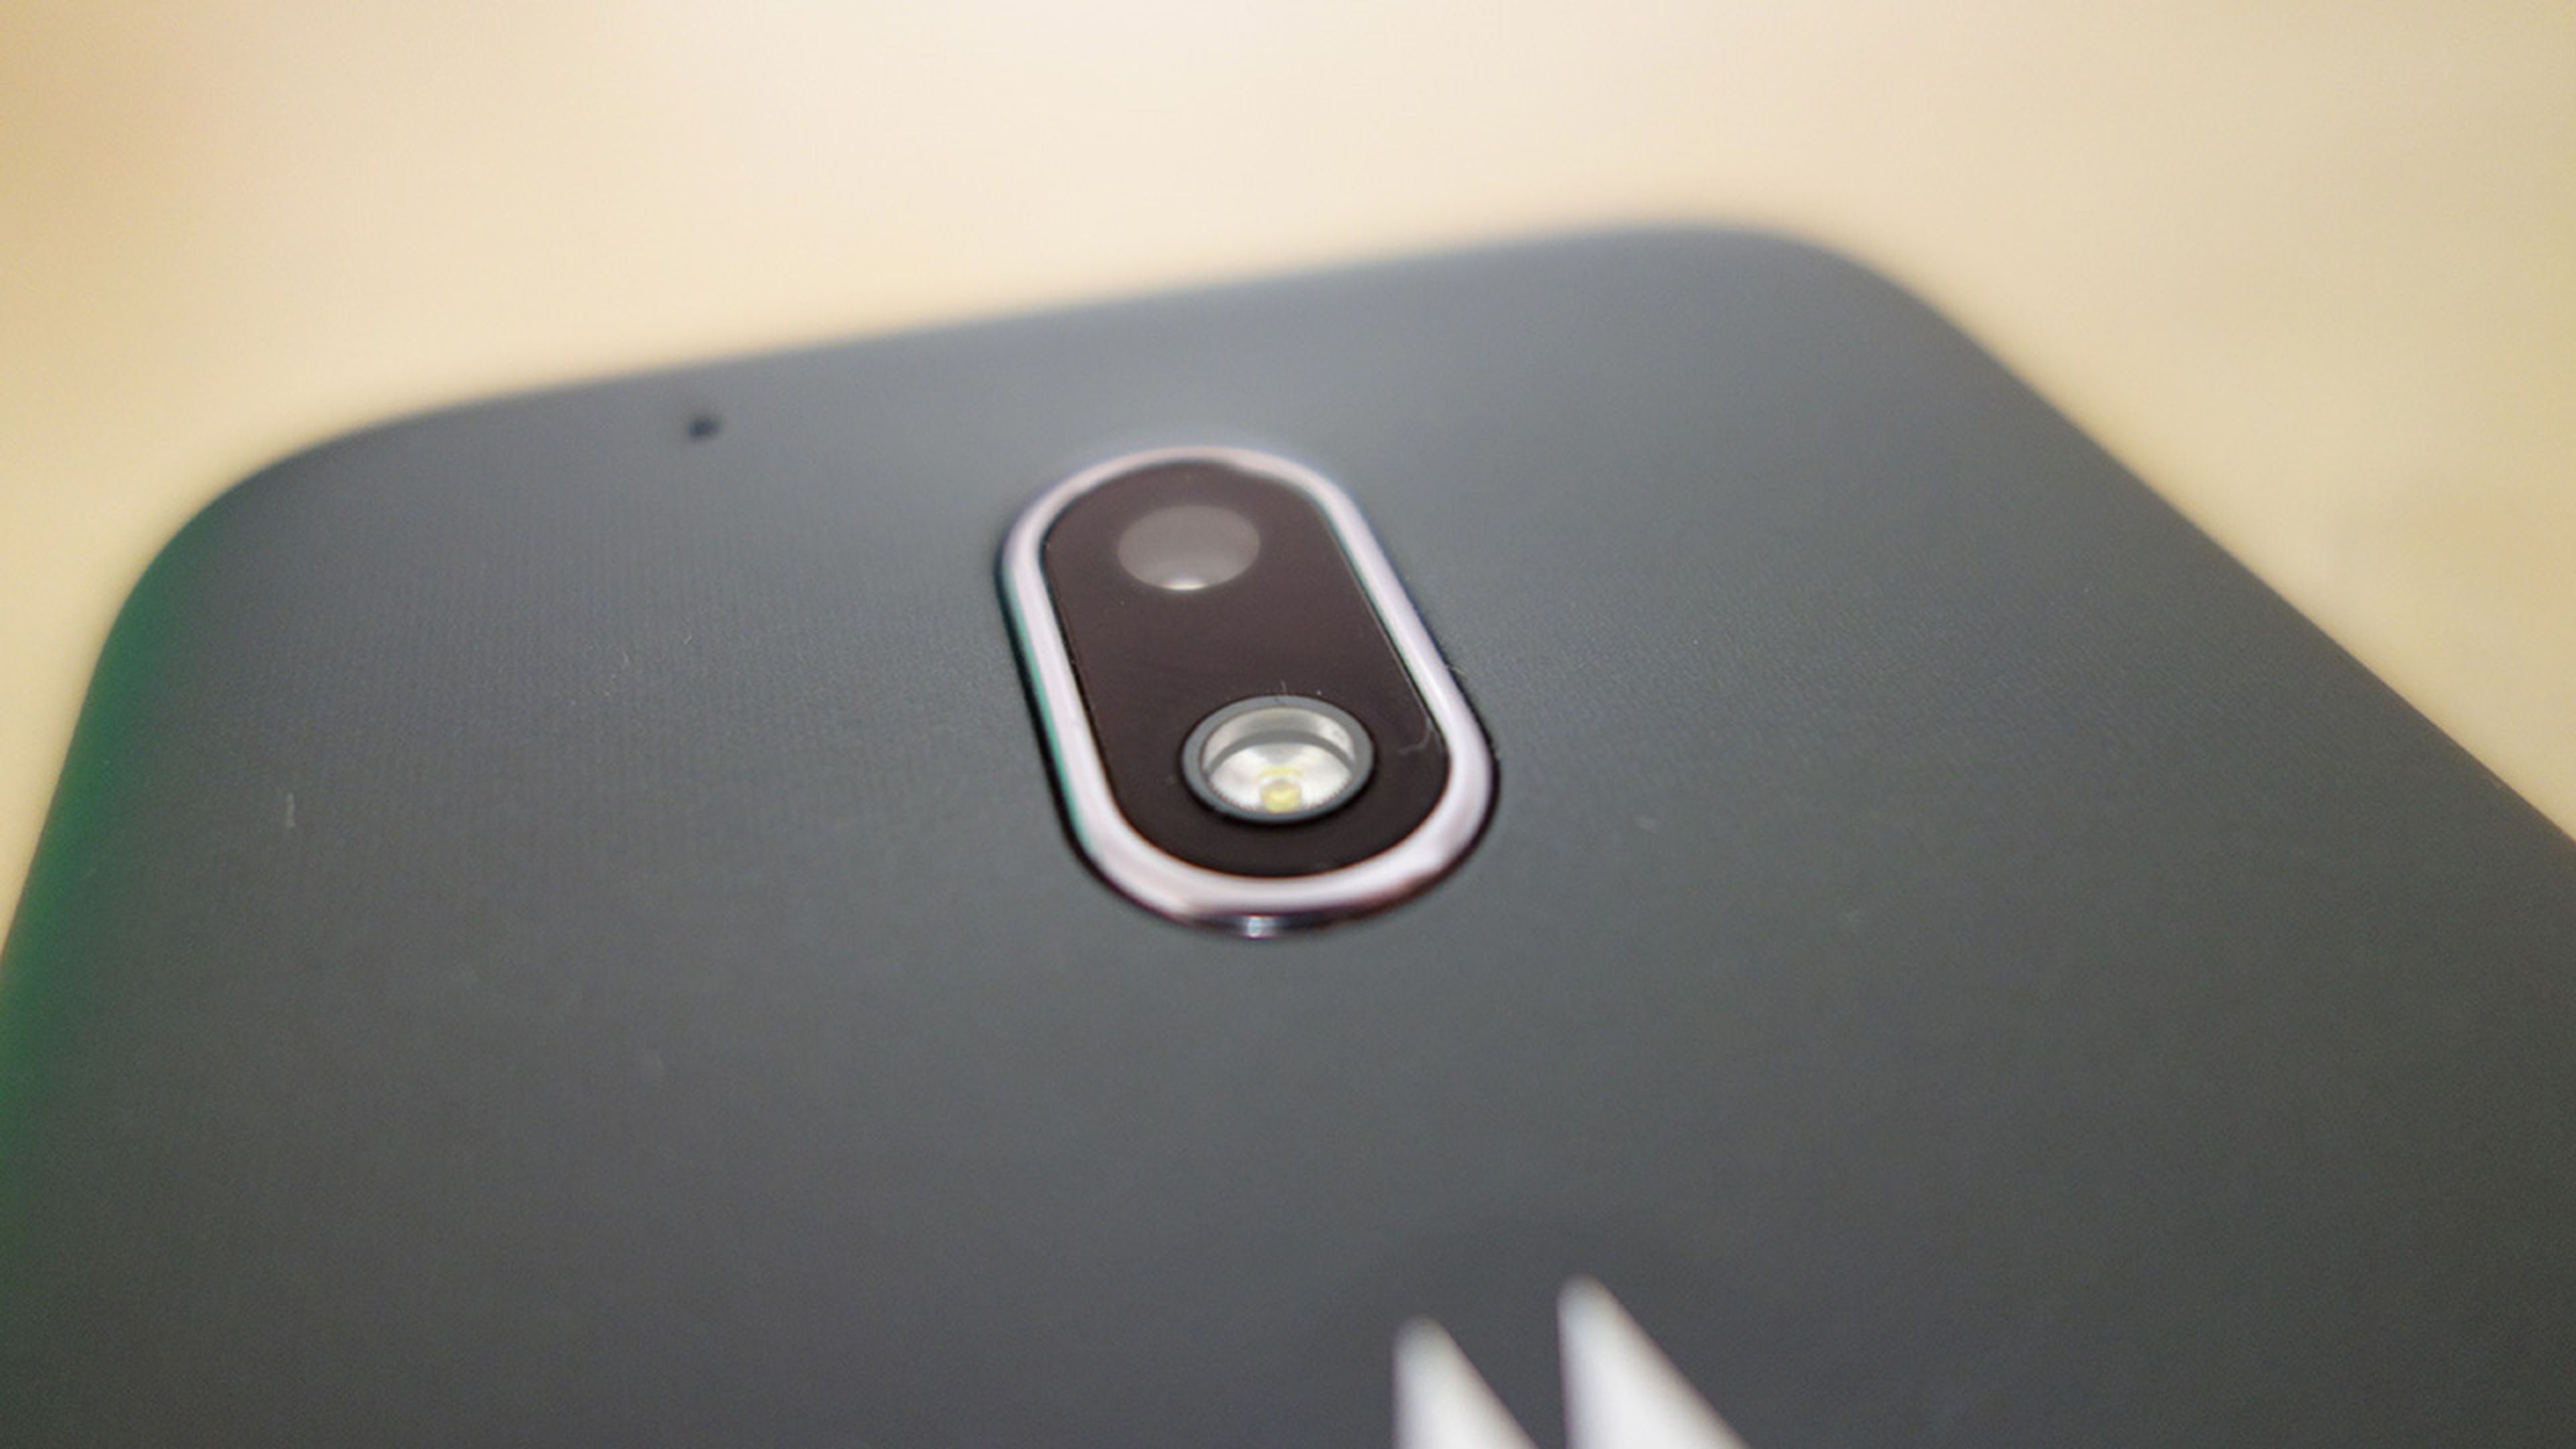 Moto G4 Play, análisis. Review de características, precio y espeficaciones